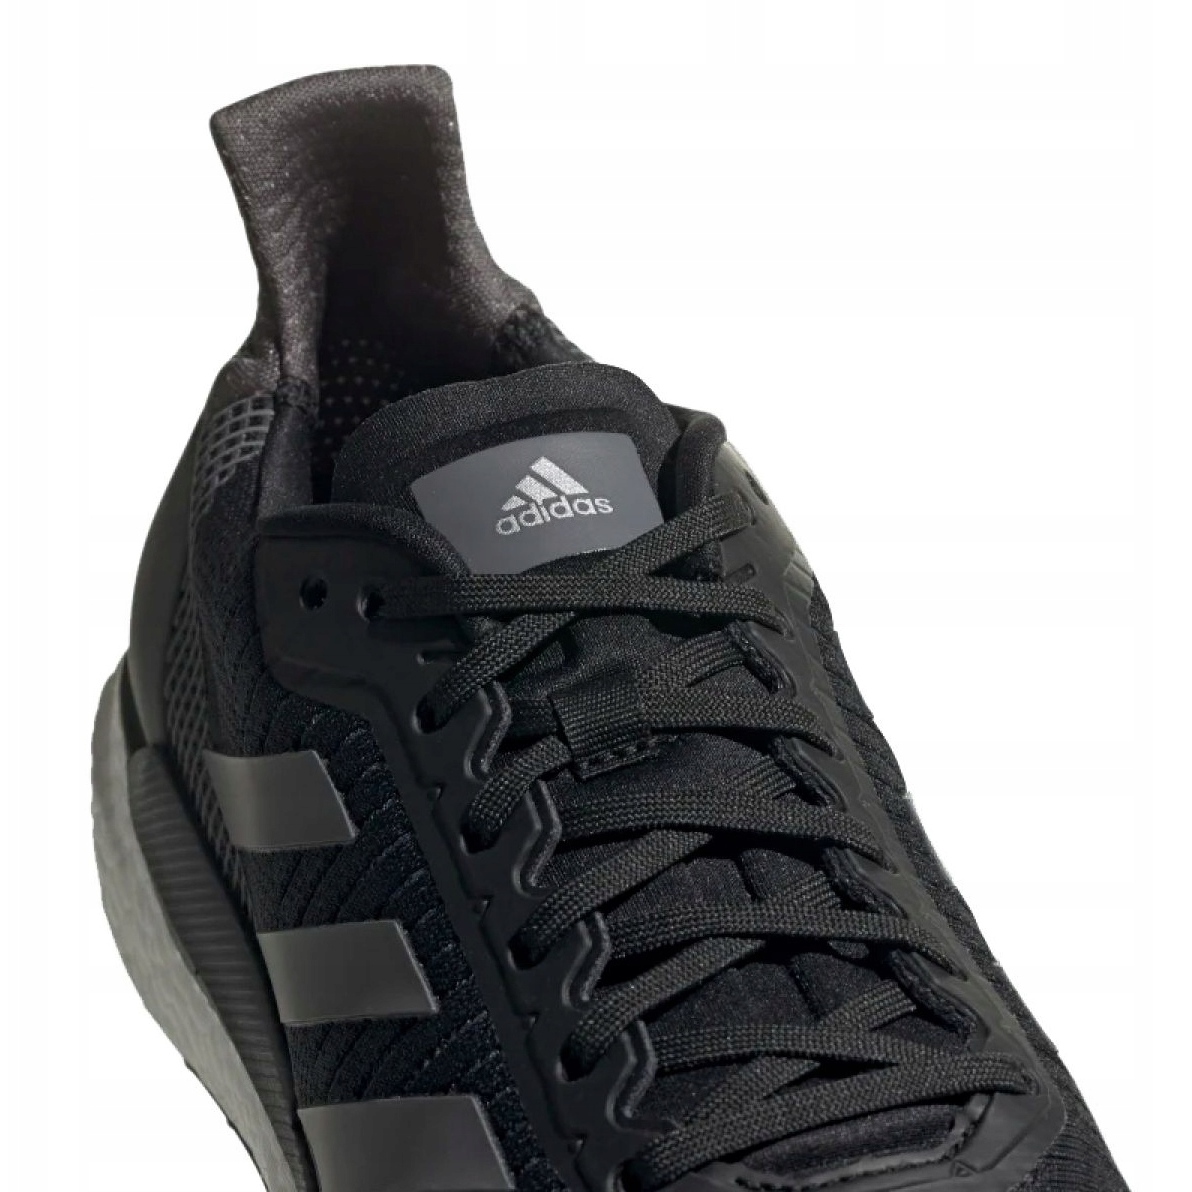 Adidas Solar Glide 19 M G28463 shoes black - KeeShoes